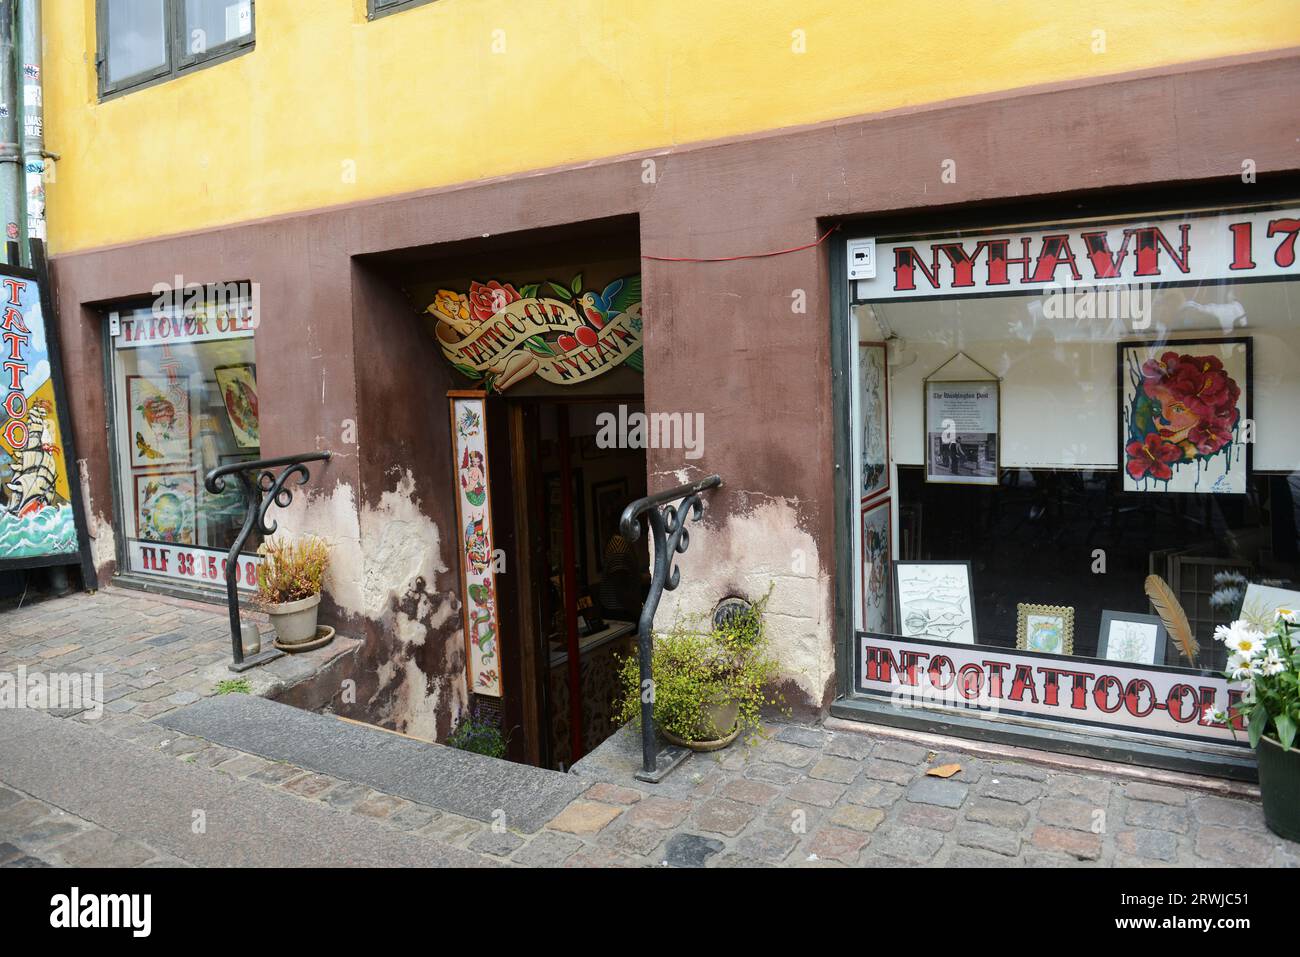 Tattoo Ole est la plus ancienne boutique de tatouage au monde qui fonctionne encore. Nyhavn 17, Copenhague, Danemark. Banque D'Images